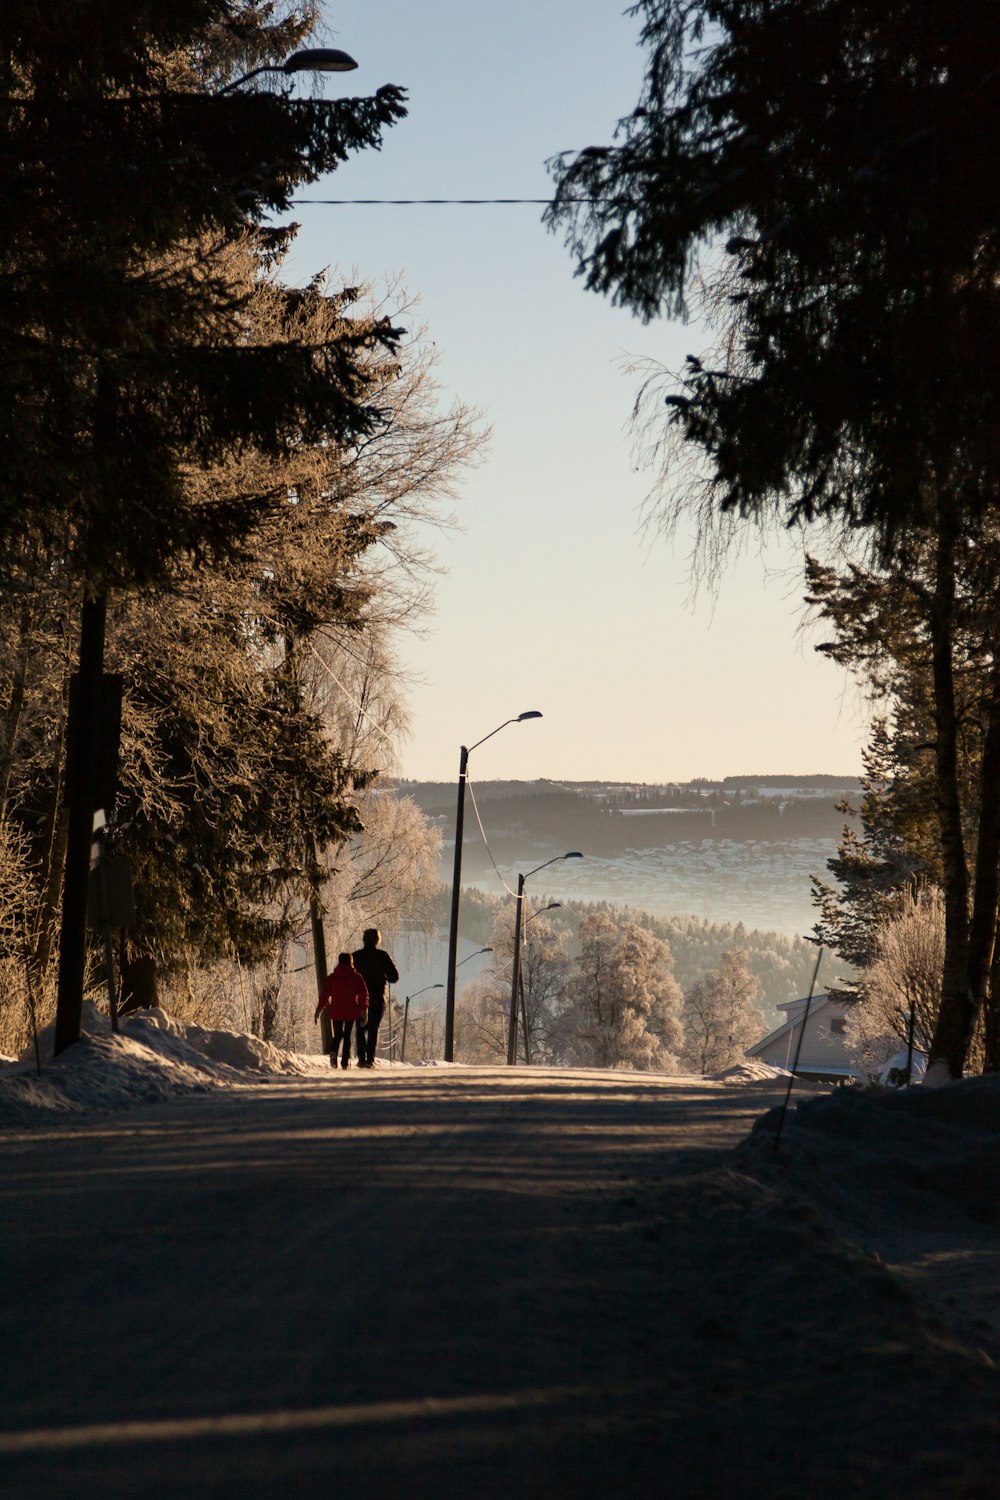 Hombre con chaqueta roja caminando por la carretera durante el día